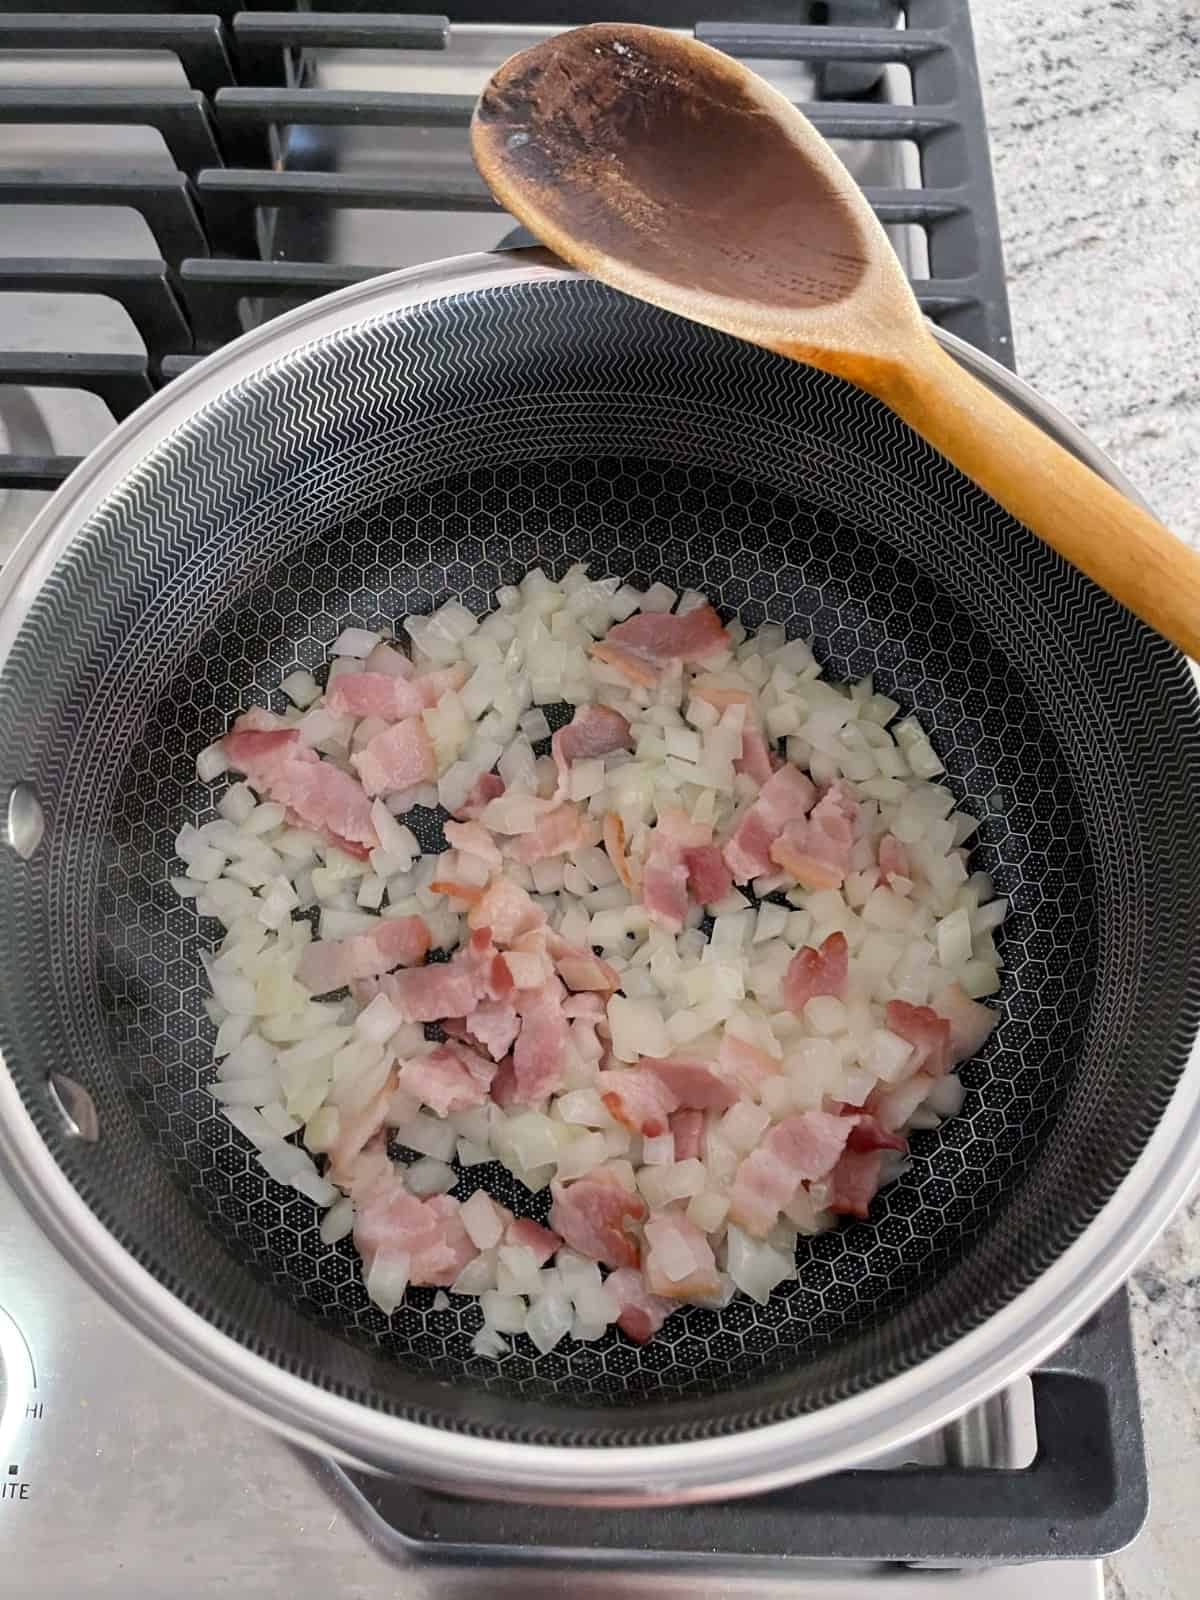 Freír la cebolla picada y el tocino en una olla.